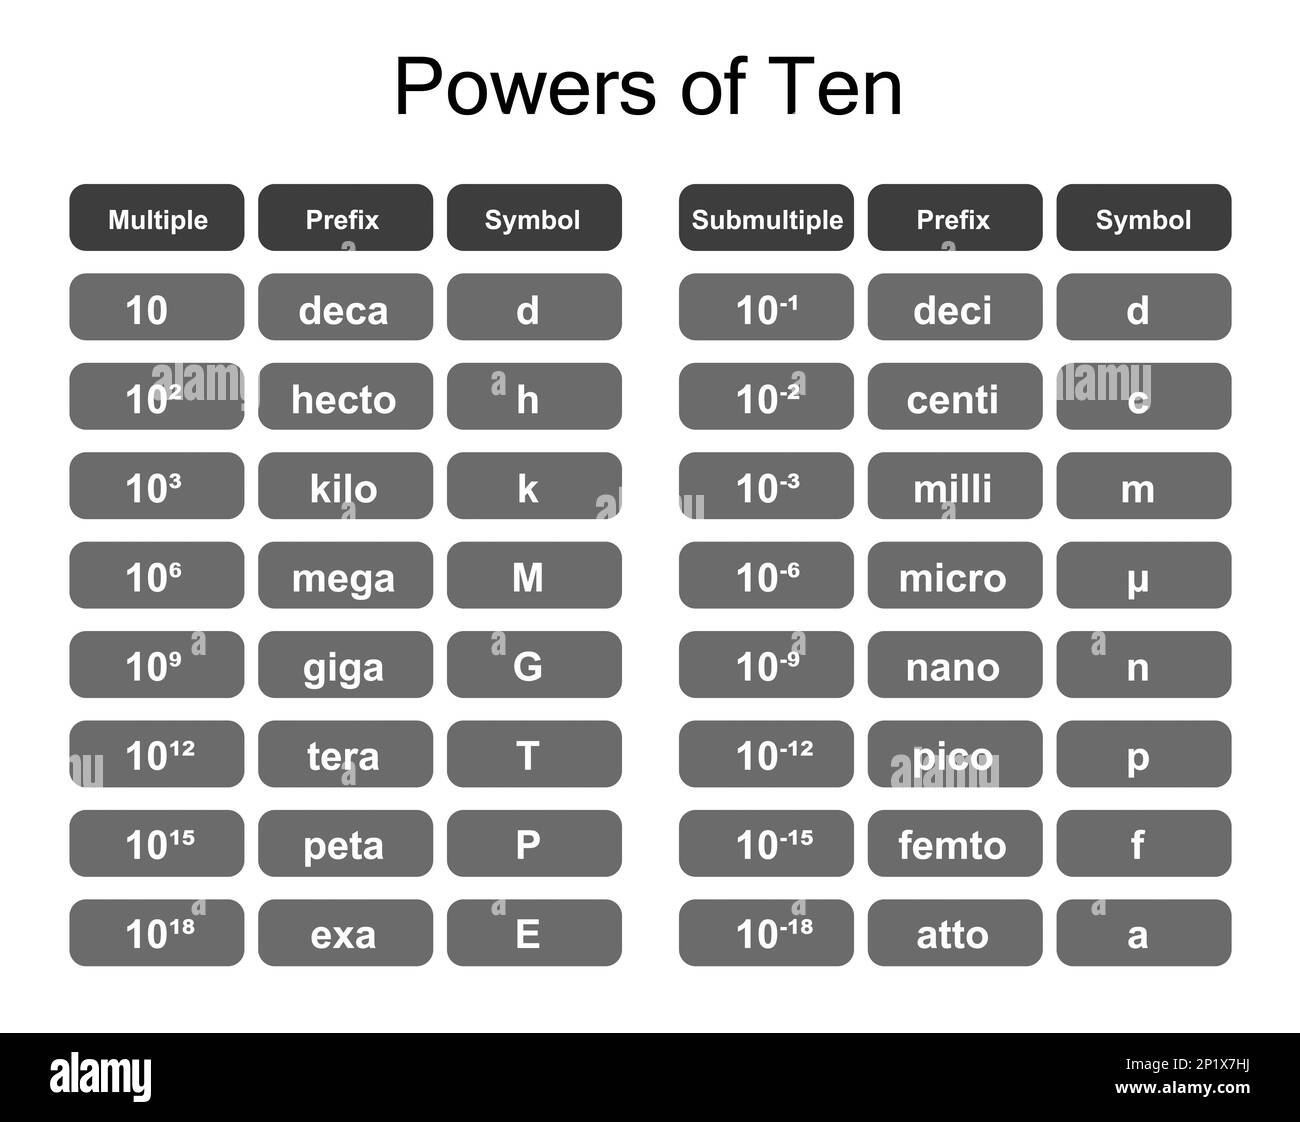 Powers of ten, illustration Stock Photo